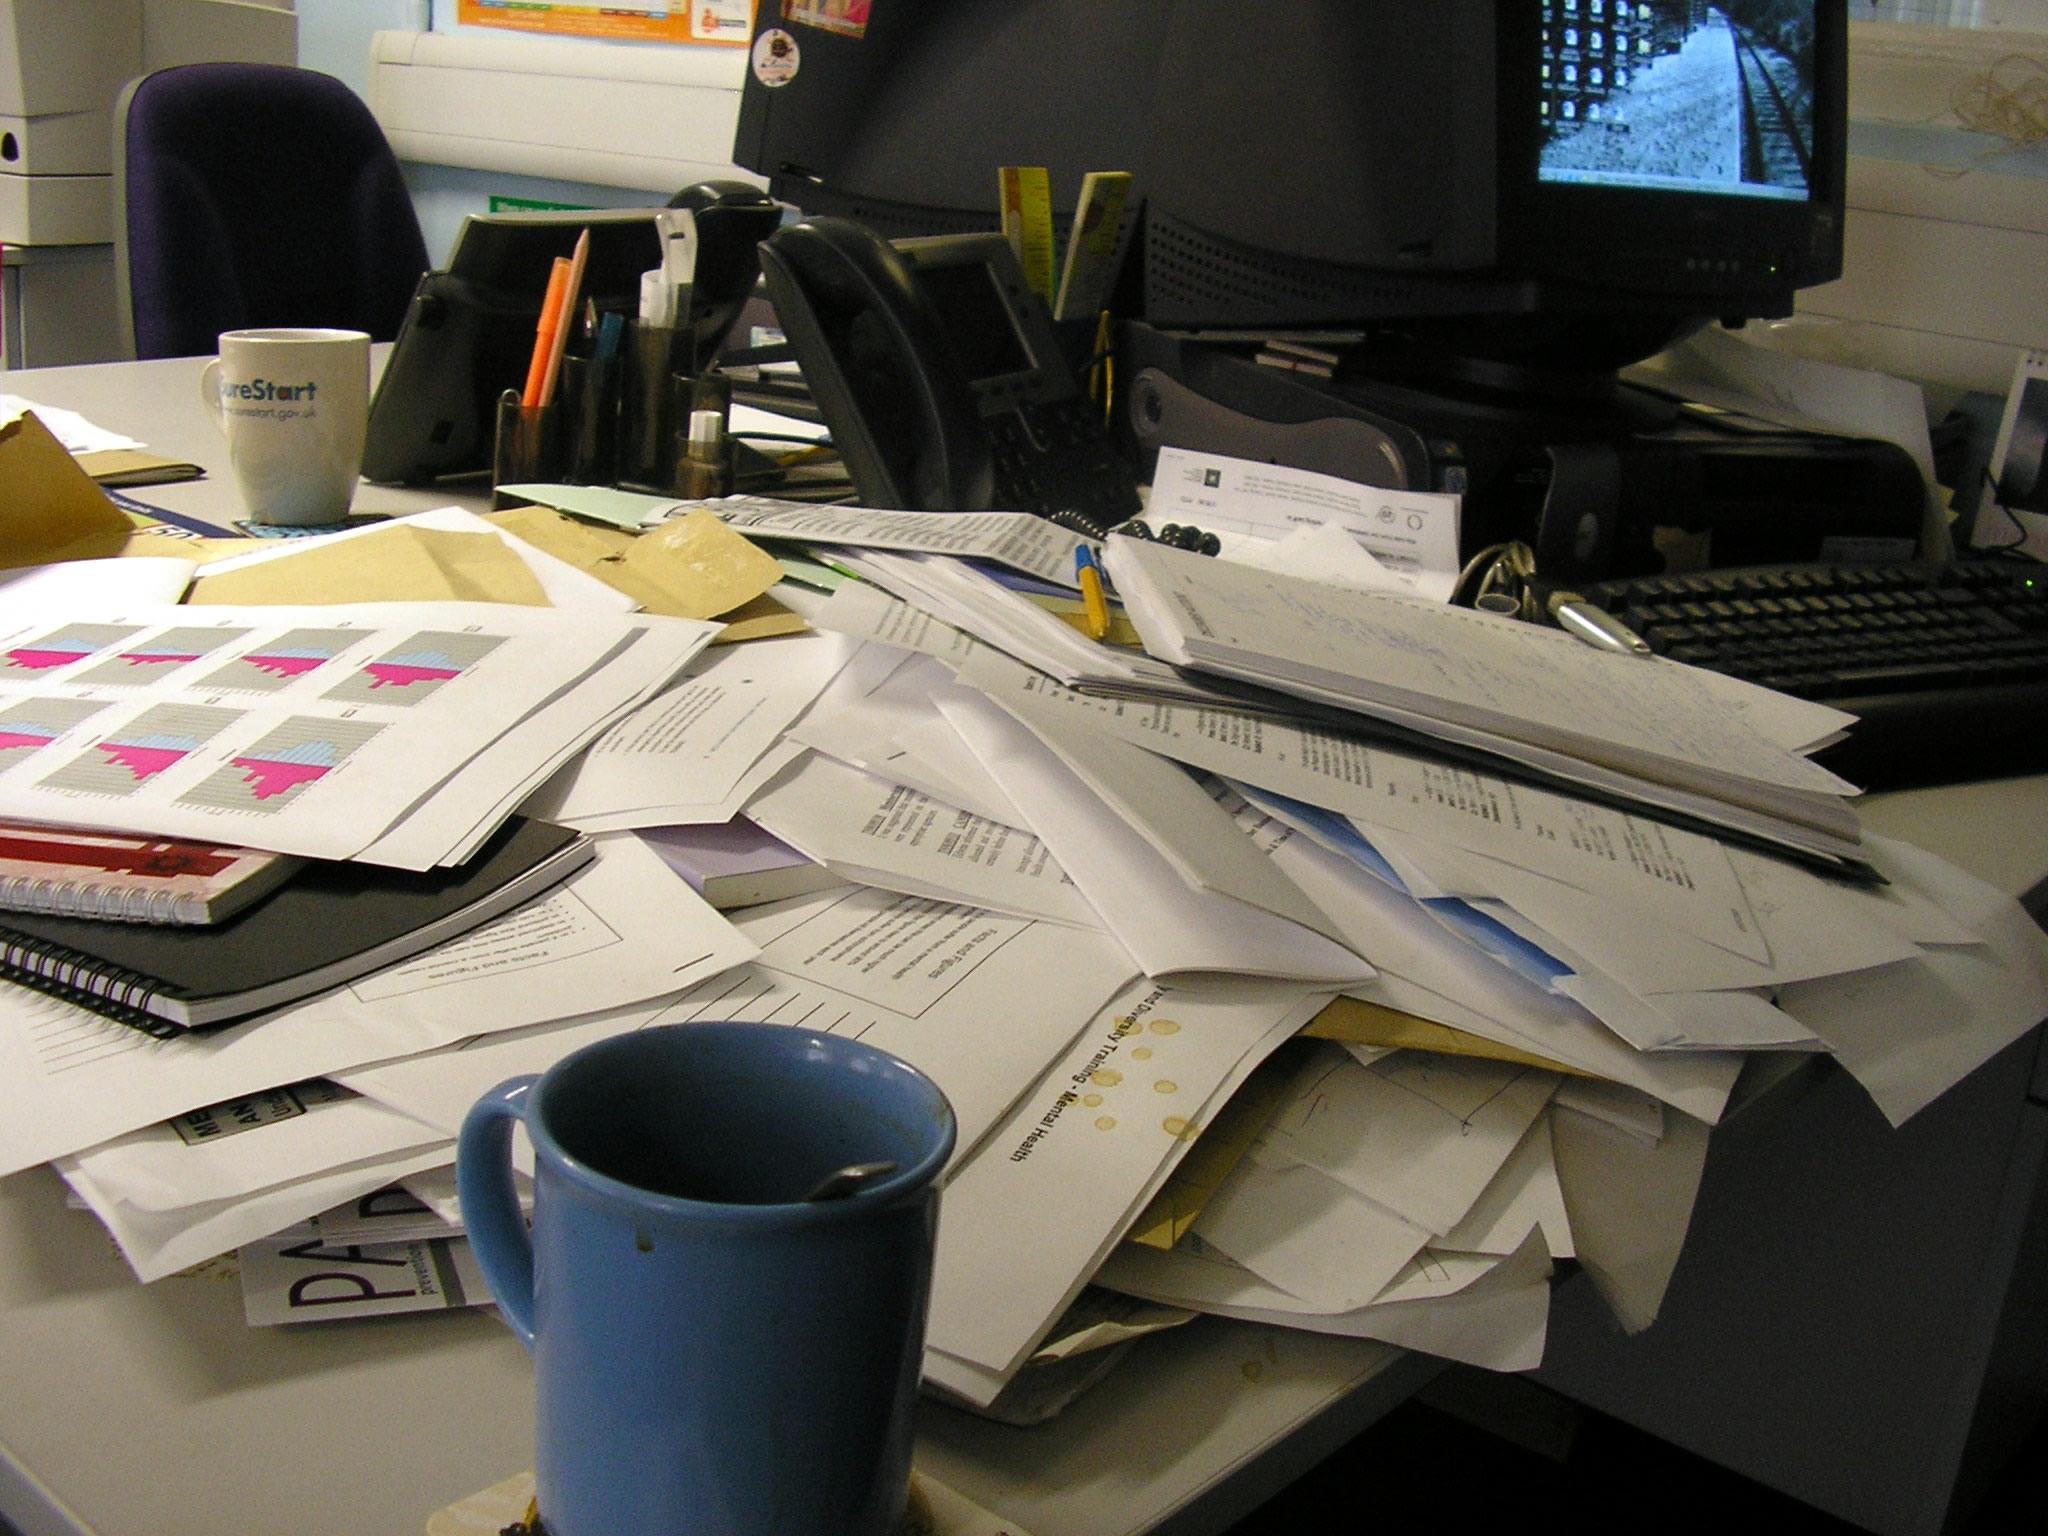 Разложенные на столе бумаги. Бумаги на столе. Стол заваленный бумагами. Письменный стол заваленный бумагами. Письменный стол заваленный бумагами в офисе.